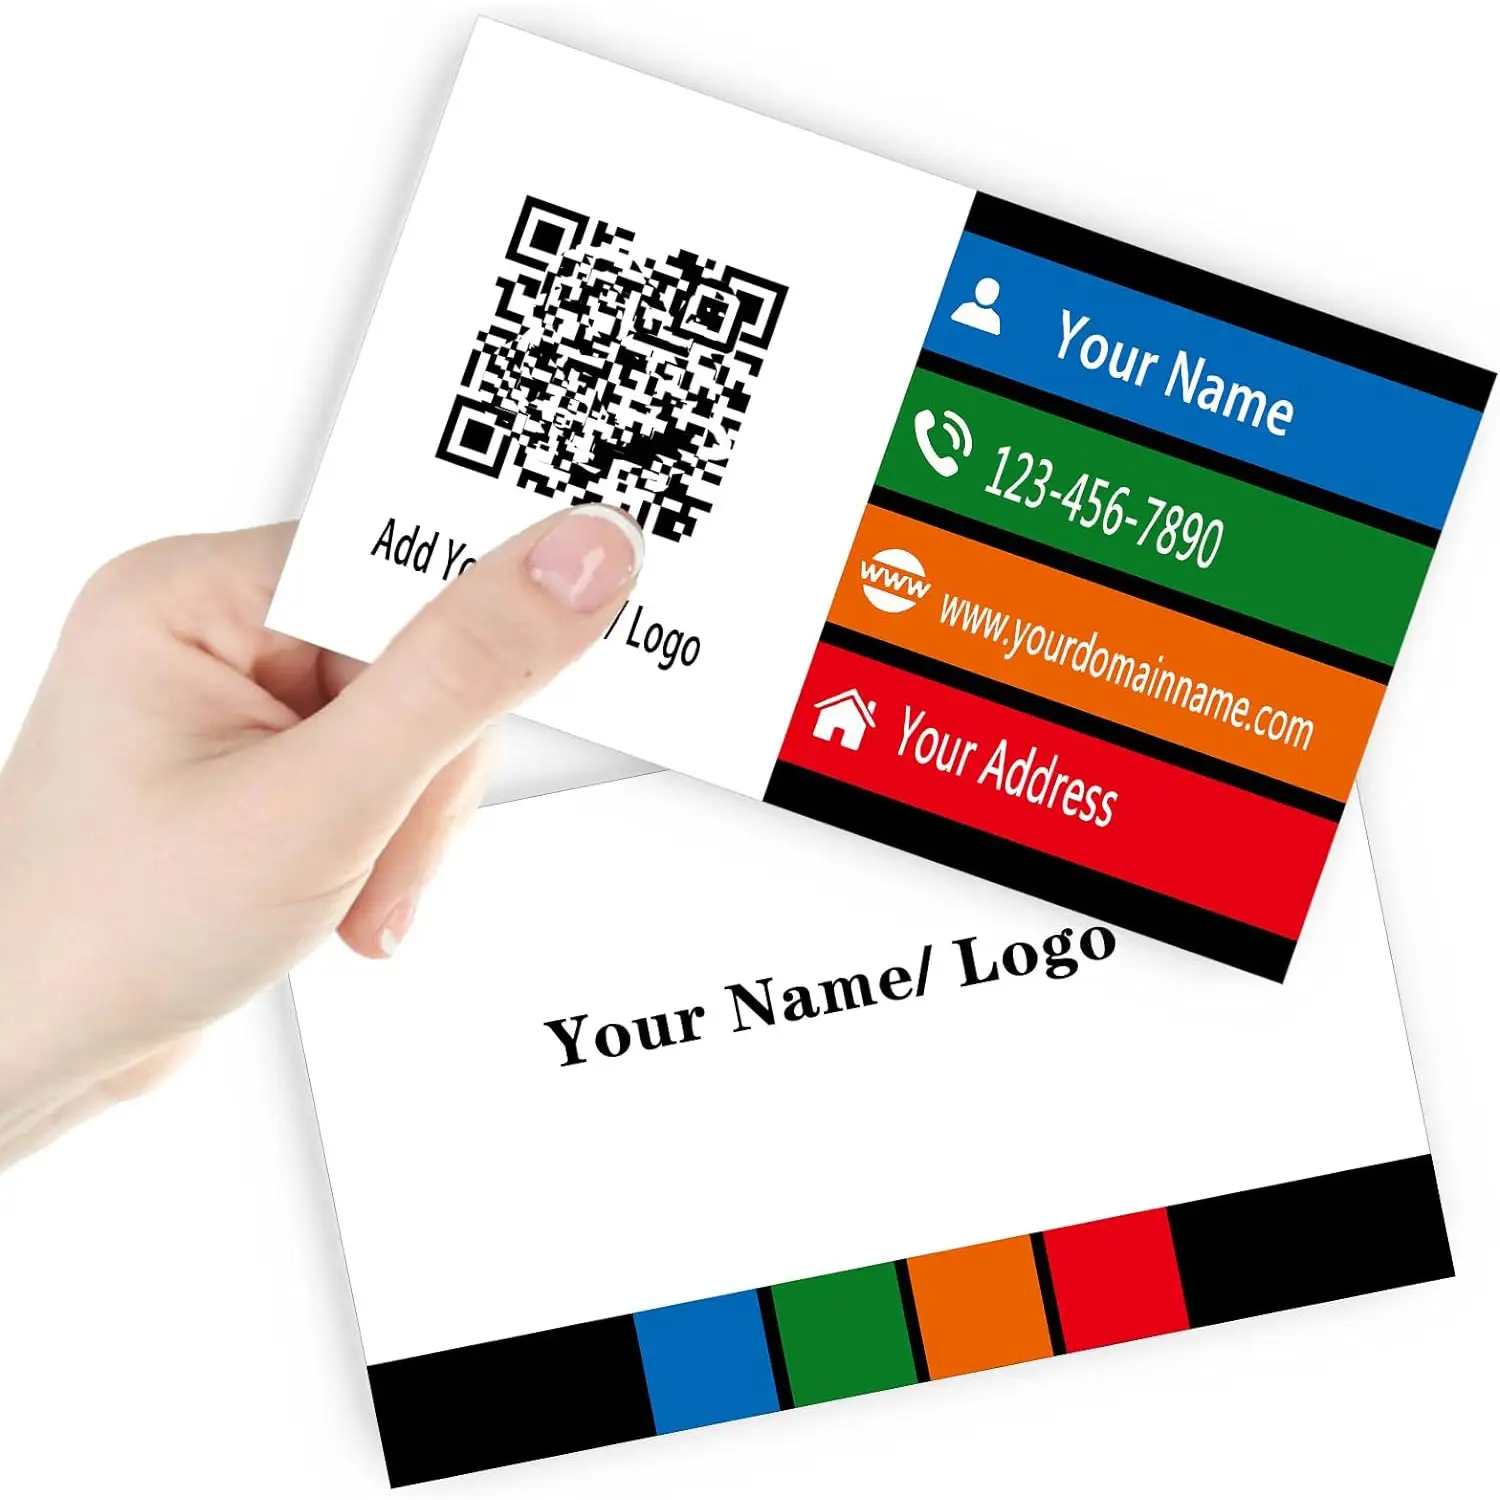 Özel tasarım kartvizitler Logo, metin, özel kartvizitler olumlu bir izlenim yaratır ve ağ için mükemmeldir